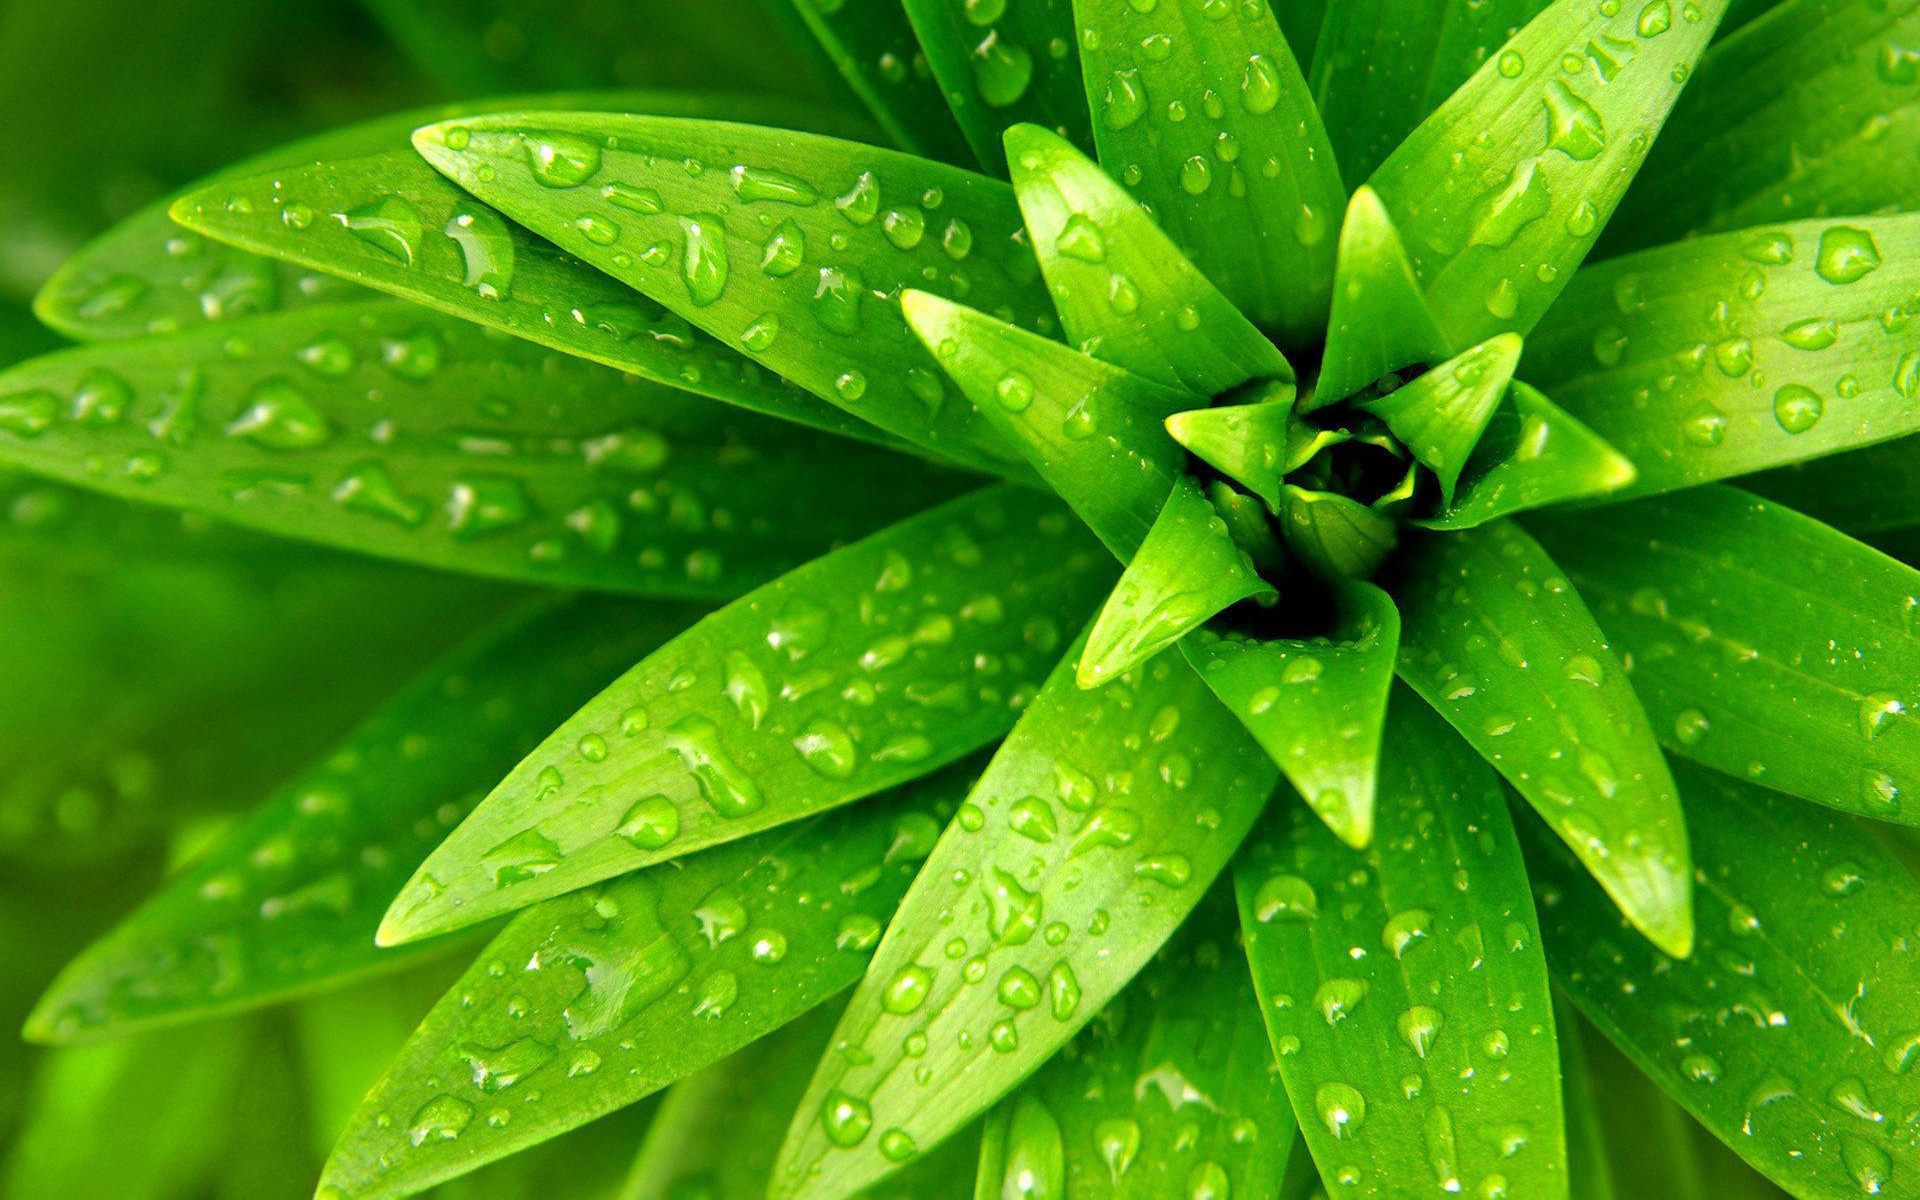 зеленое растение, роса, капли, великолепные обои для рабочего стола, макро, green plant with dew drops, beautiful wallpaper for your desktop, macro